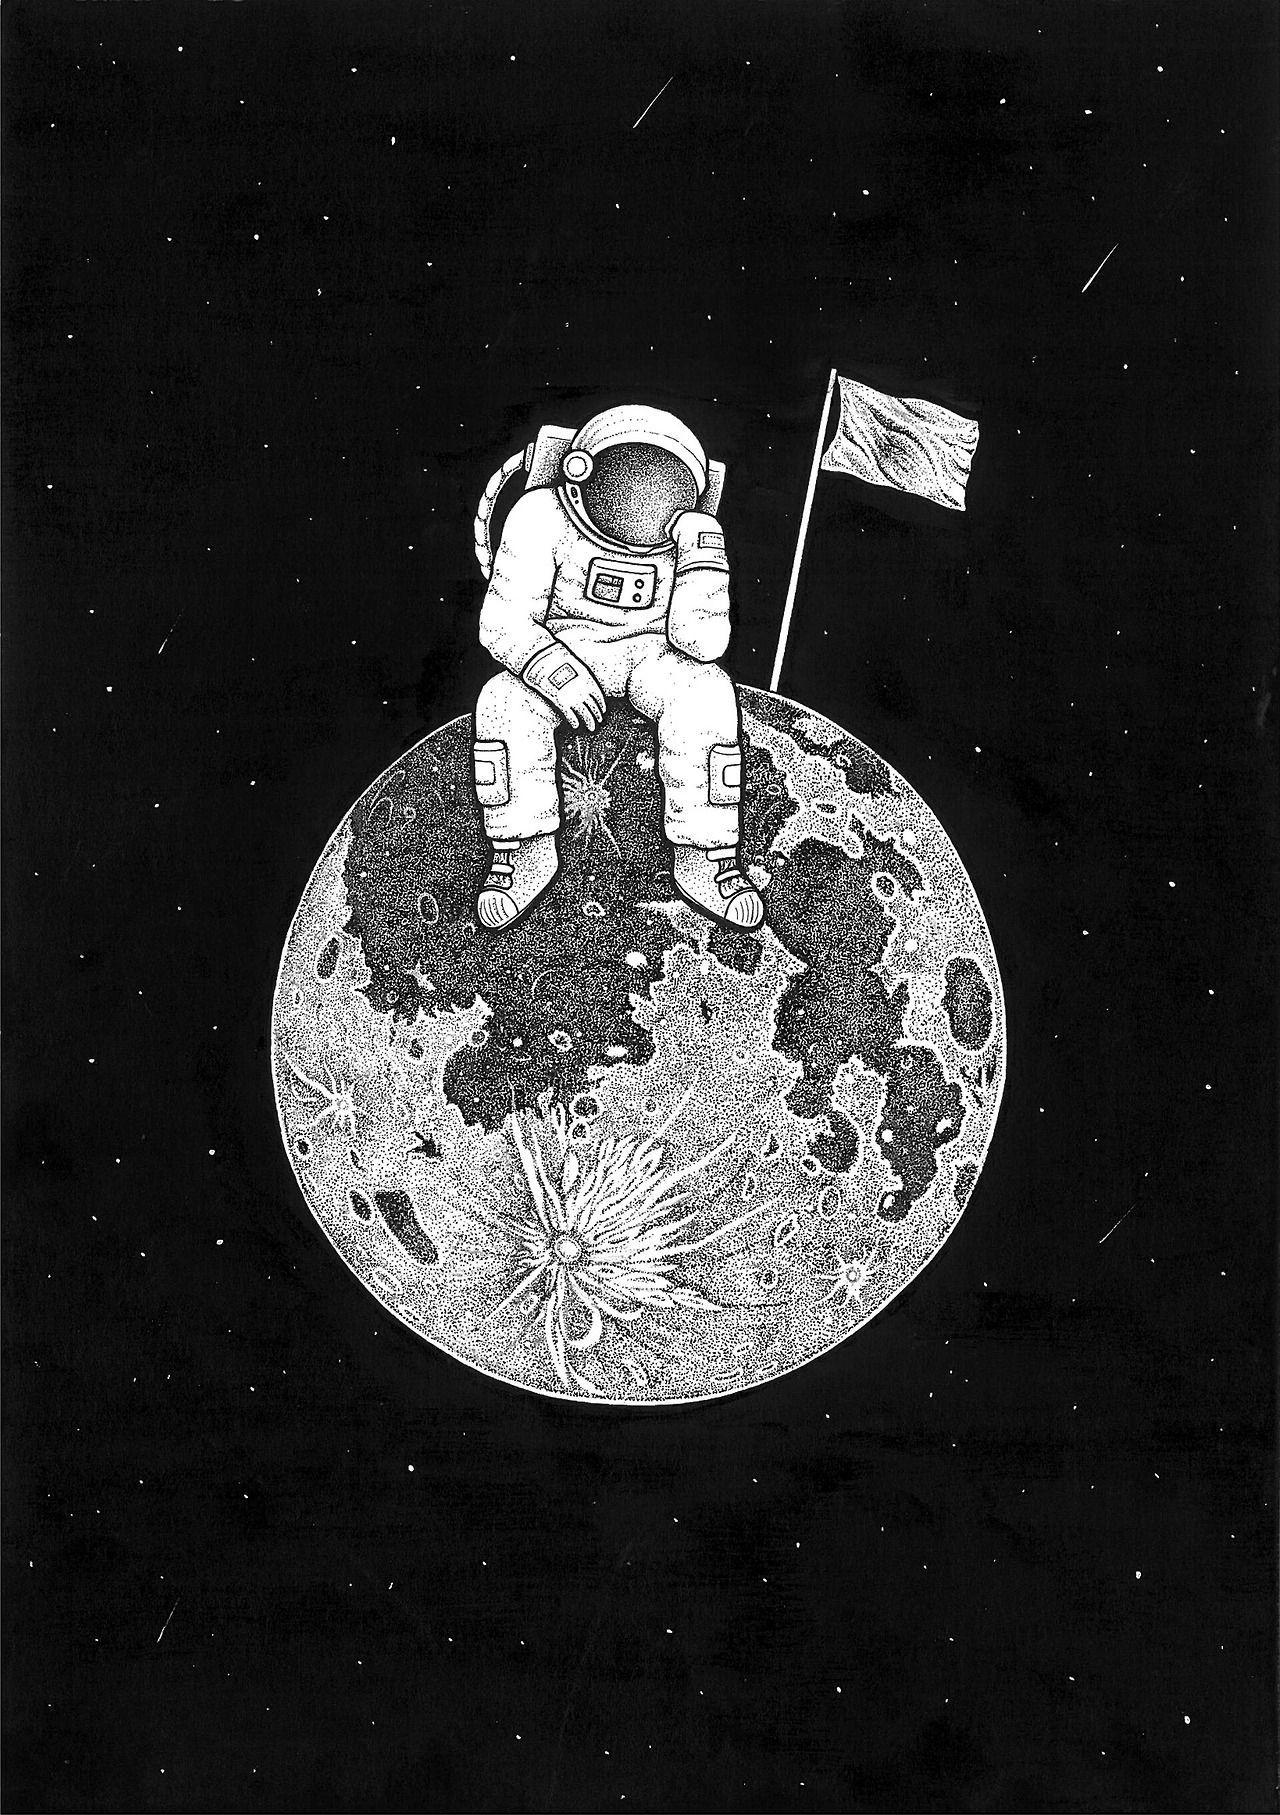 18334 Astronaut Sketch Images Stock Photos  Vectors  Shutterstock